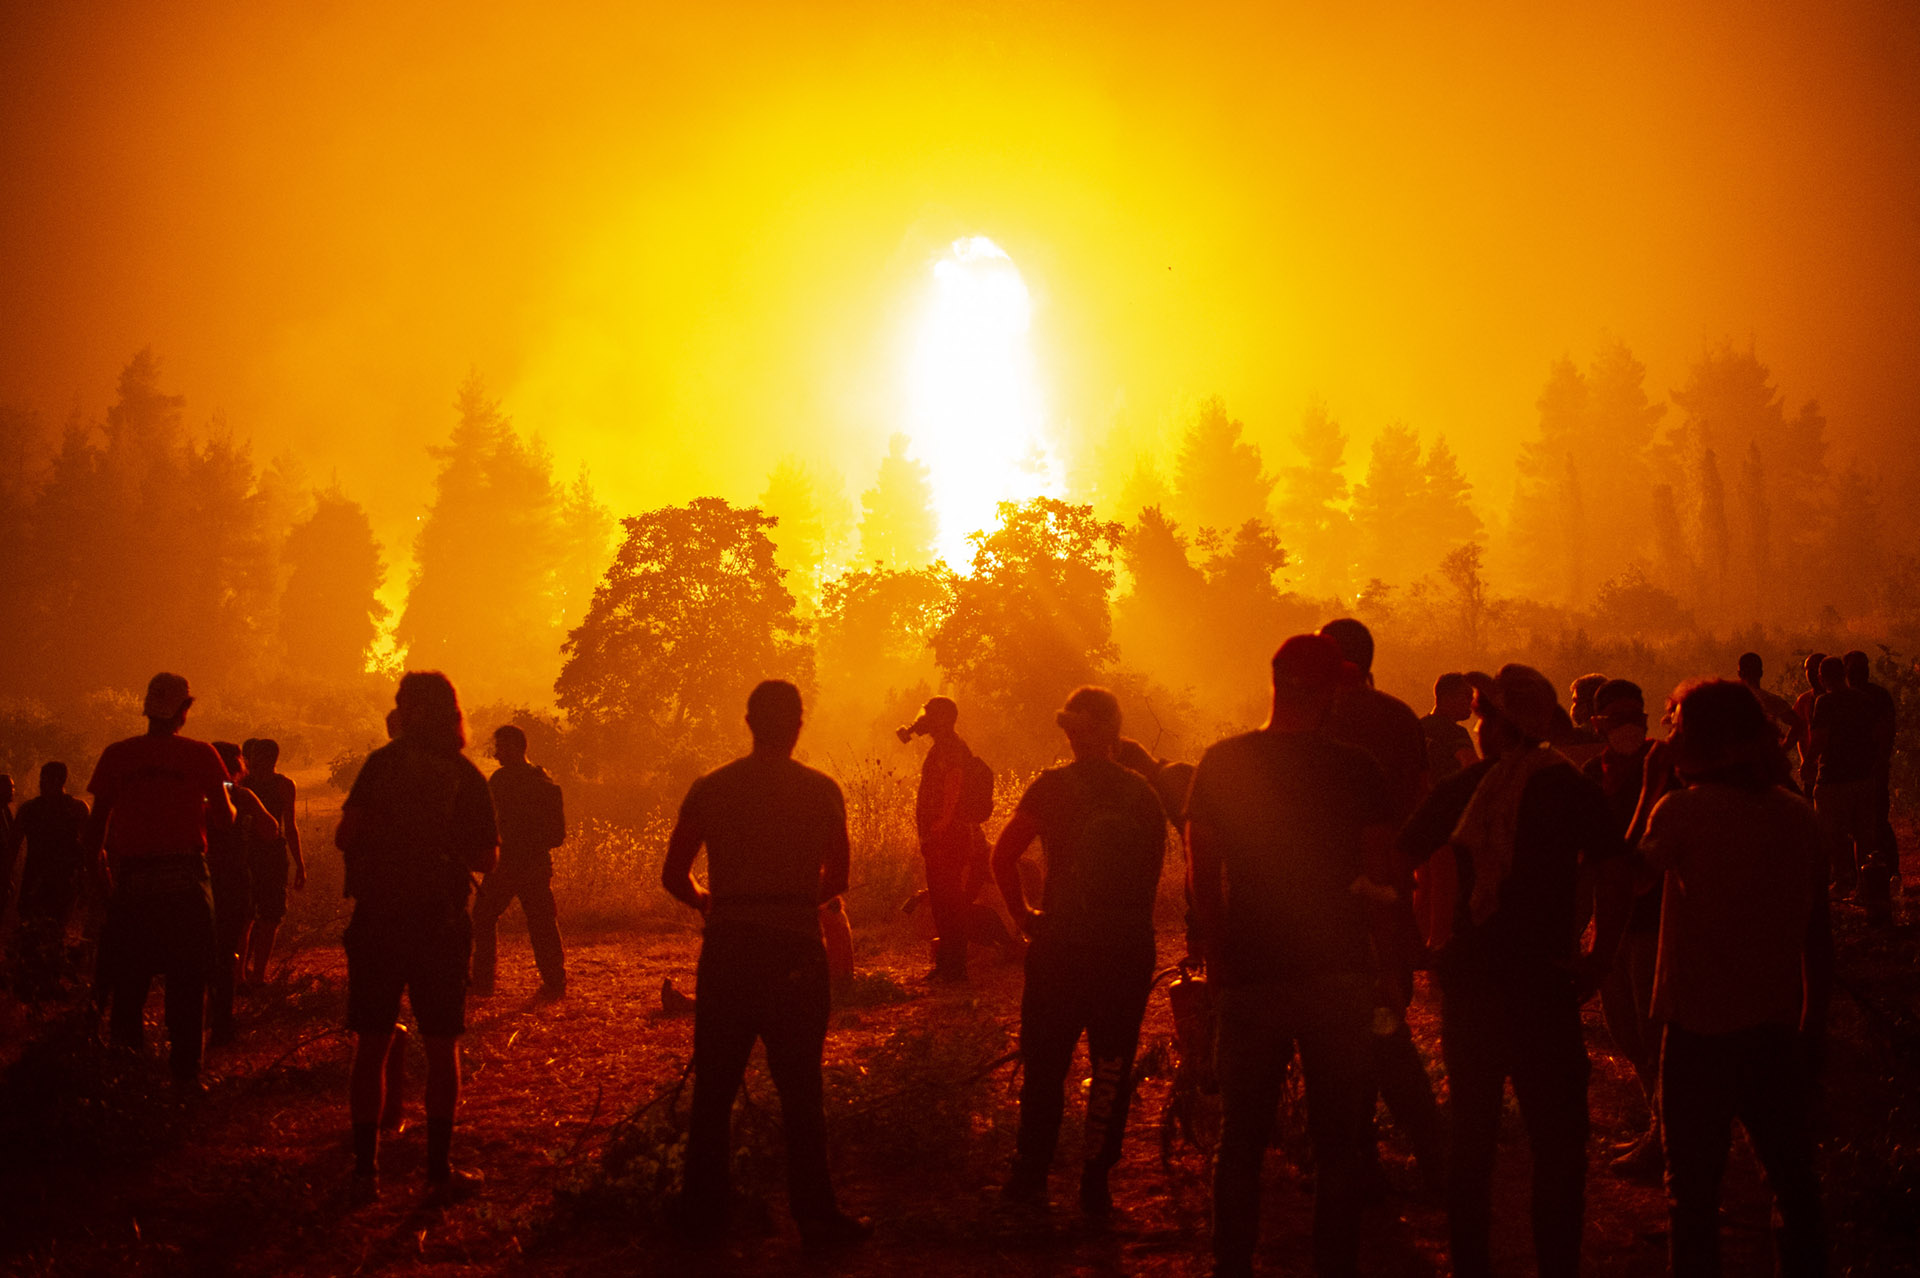 Kilencvenezer hektárnyi terület vált a tűz martalékává Görögországban